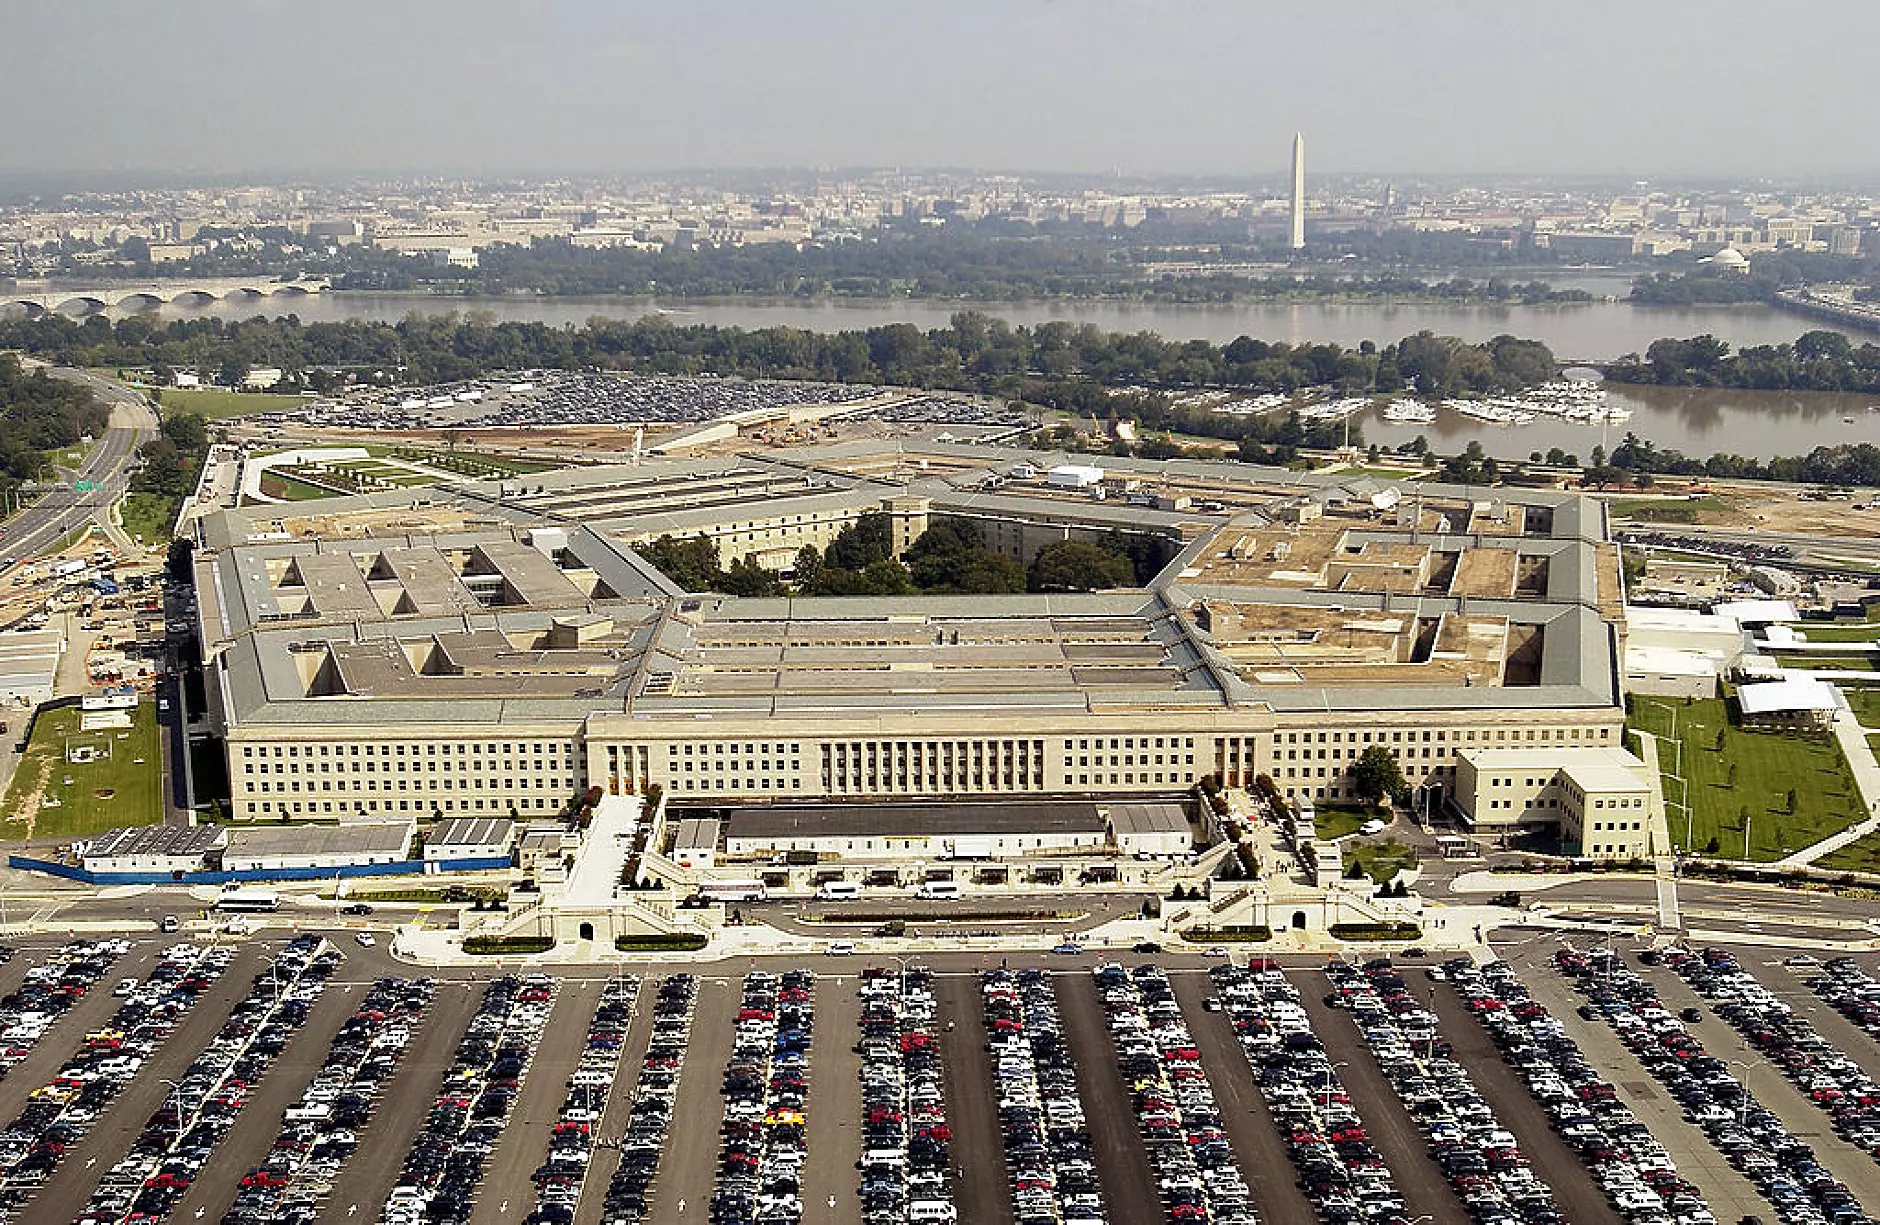 Пентагонът подели договор за облачни услуги за 9 млрд. долара между четири технологични гиганта